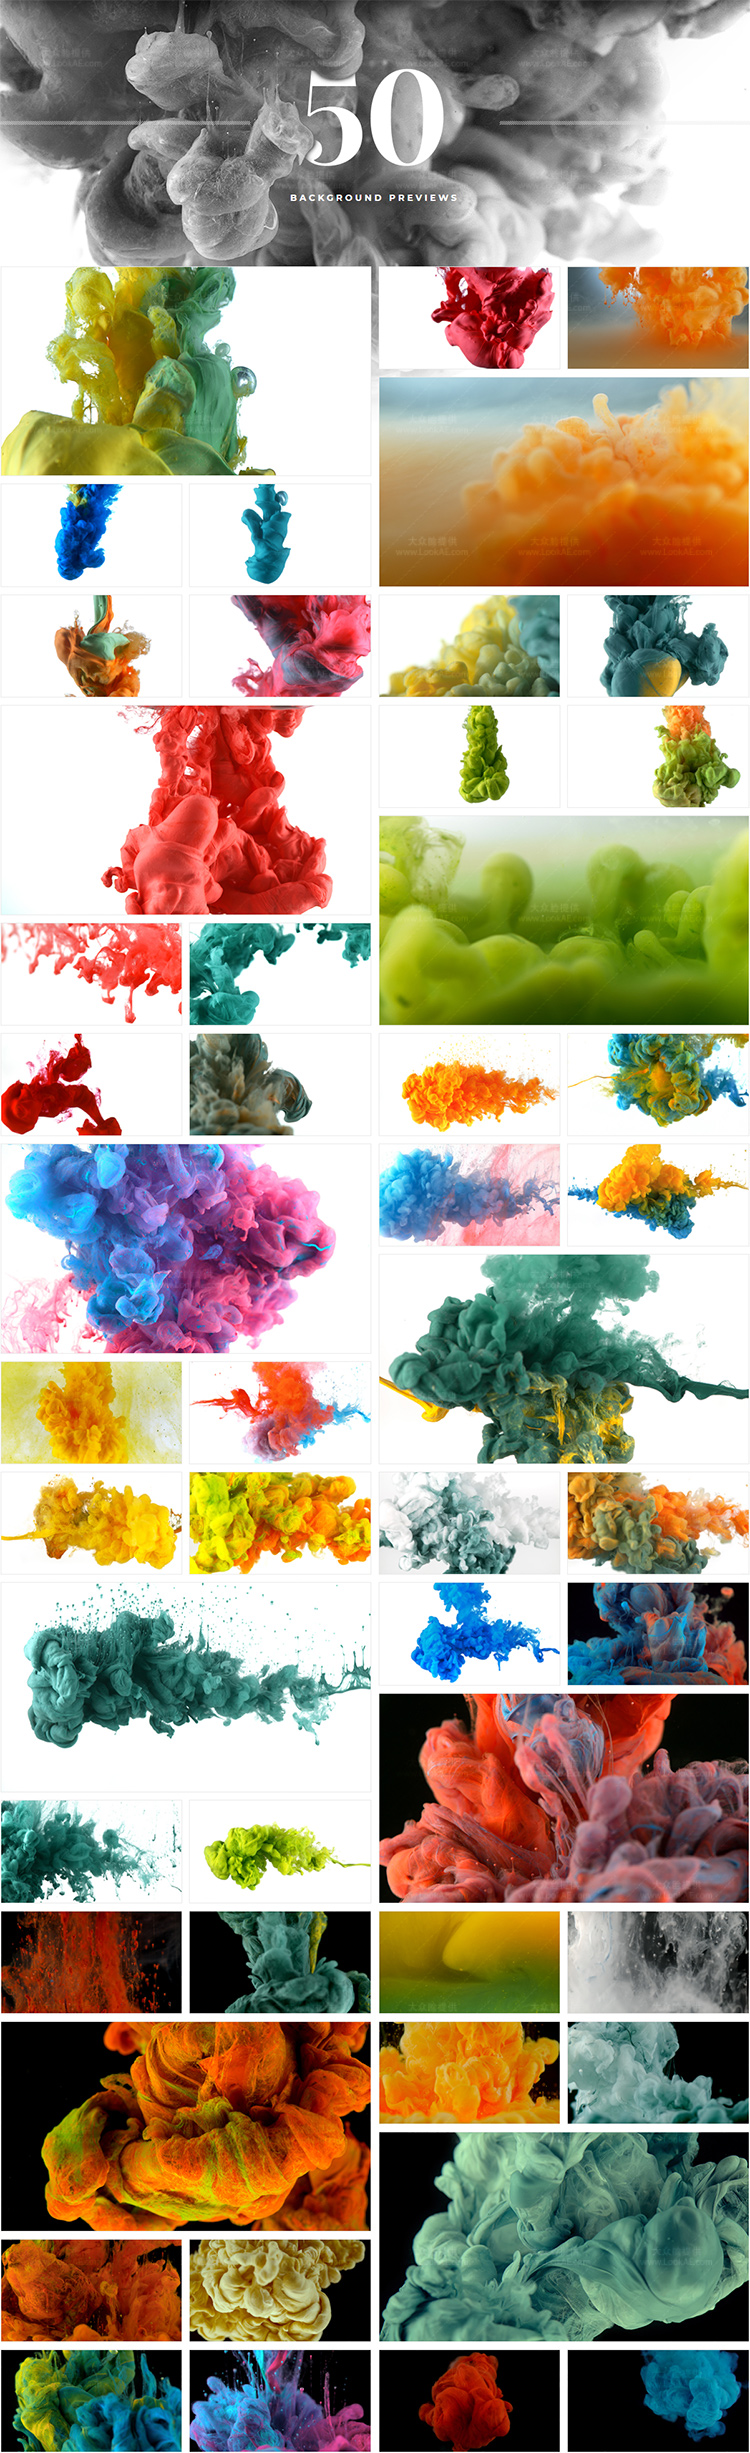 4K视频素材-50个微观特写彩色水墨溶解流体背景特效动画